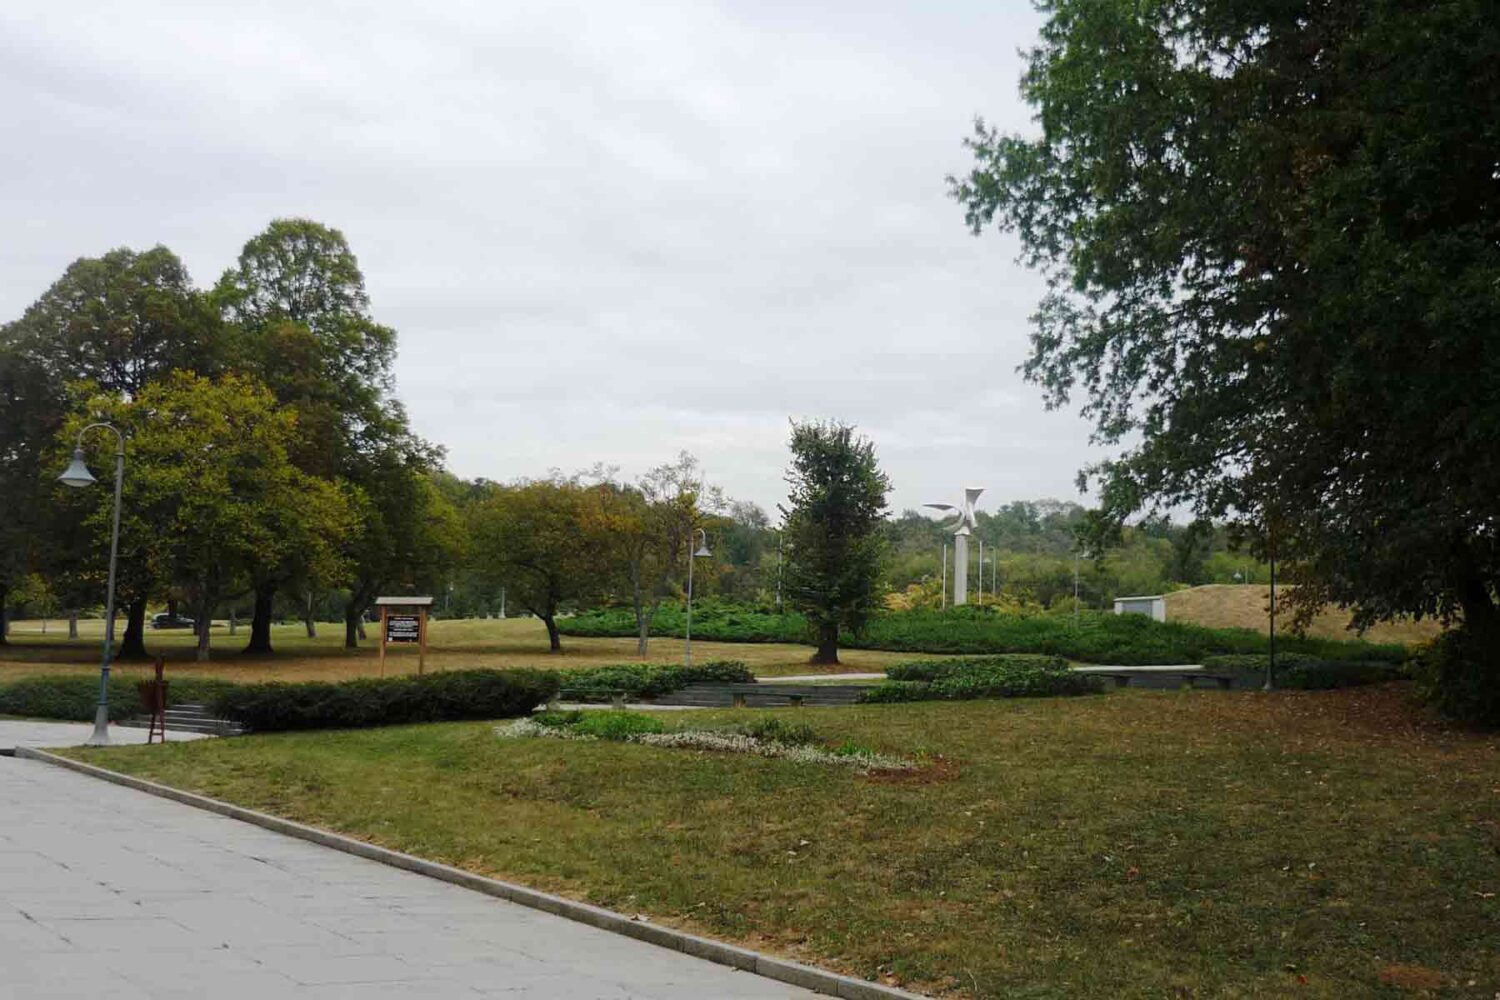 Priroda i okolina oko memorijalnog parka